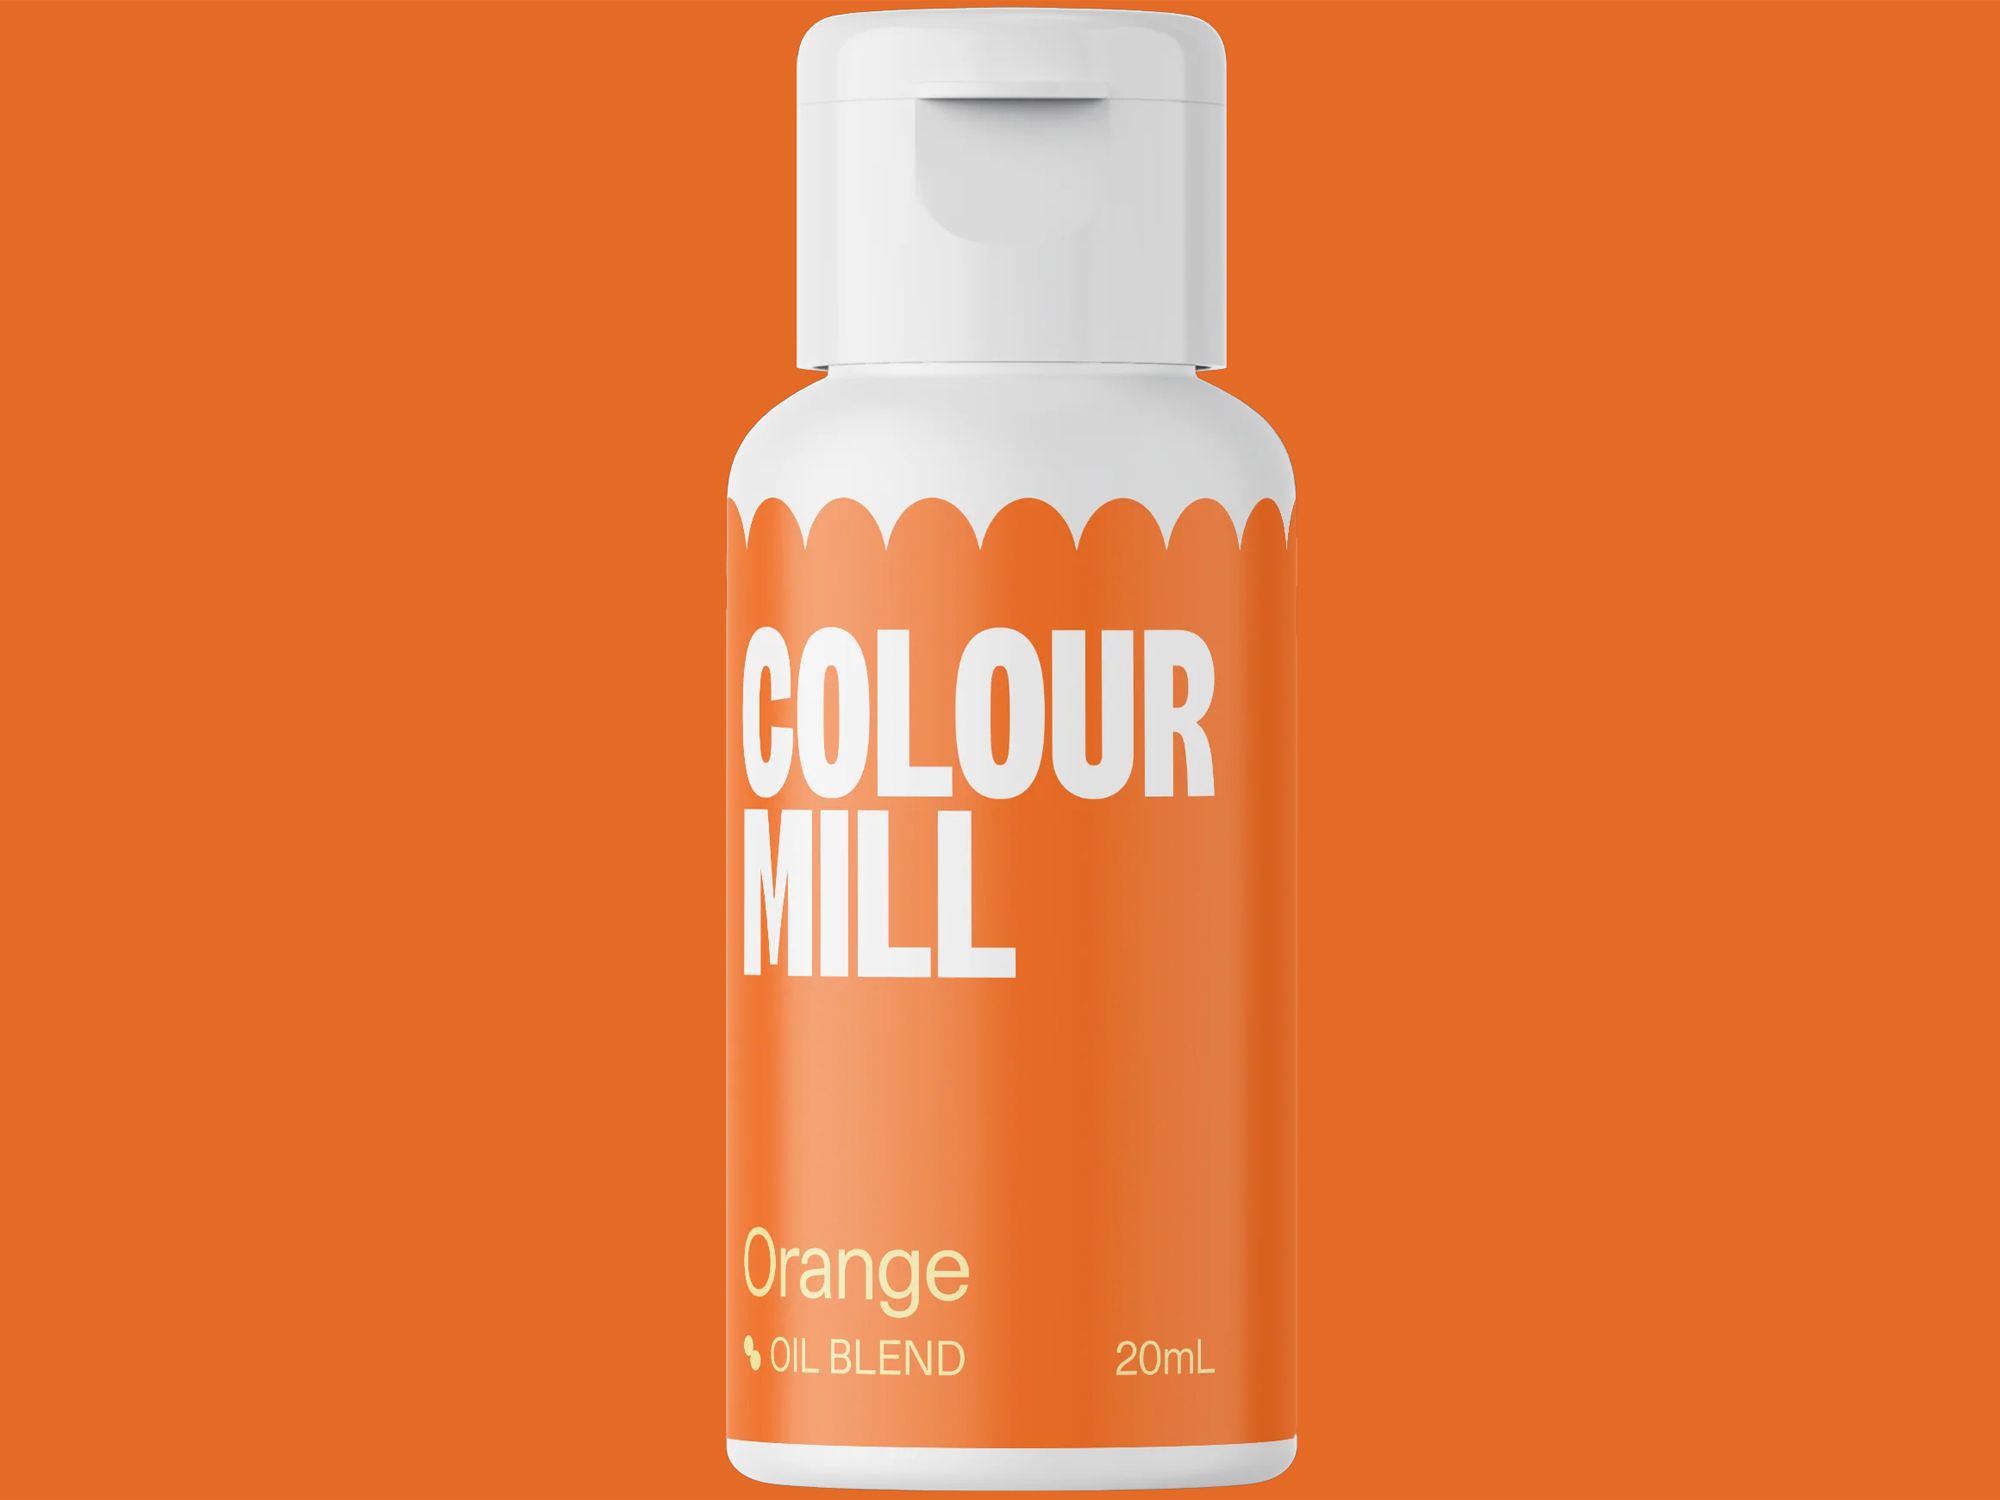 Colour Mill Orange (Oil Blend) 20ml